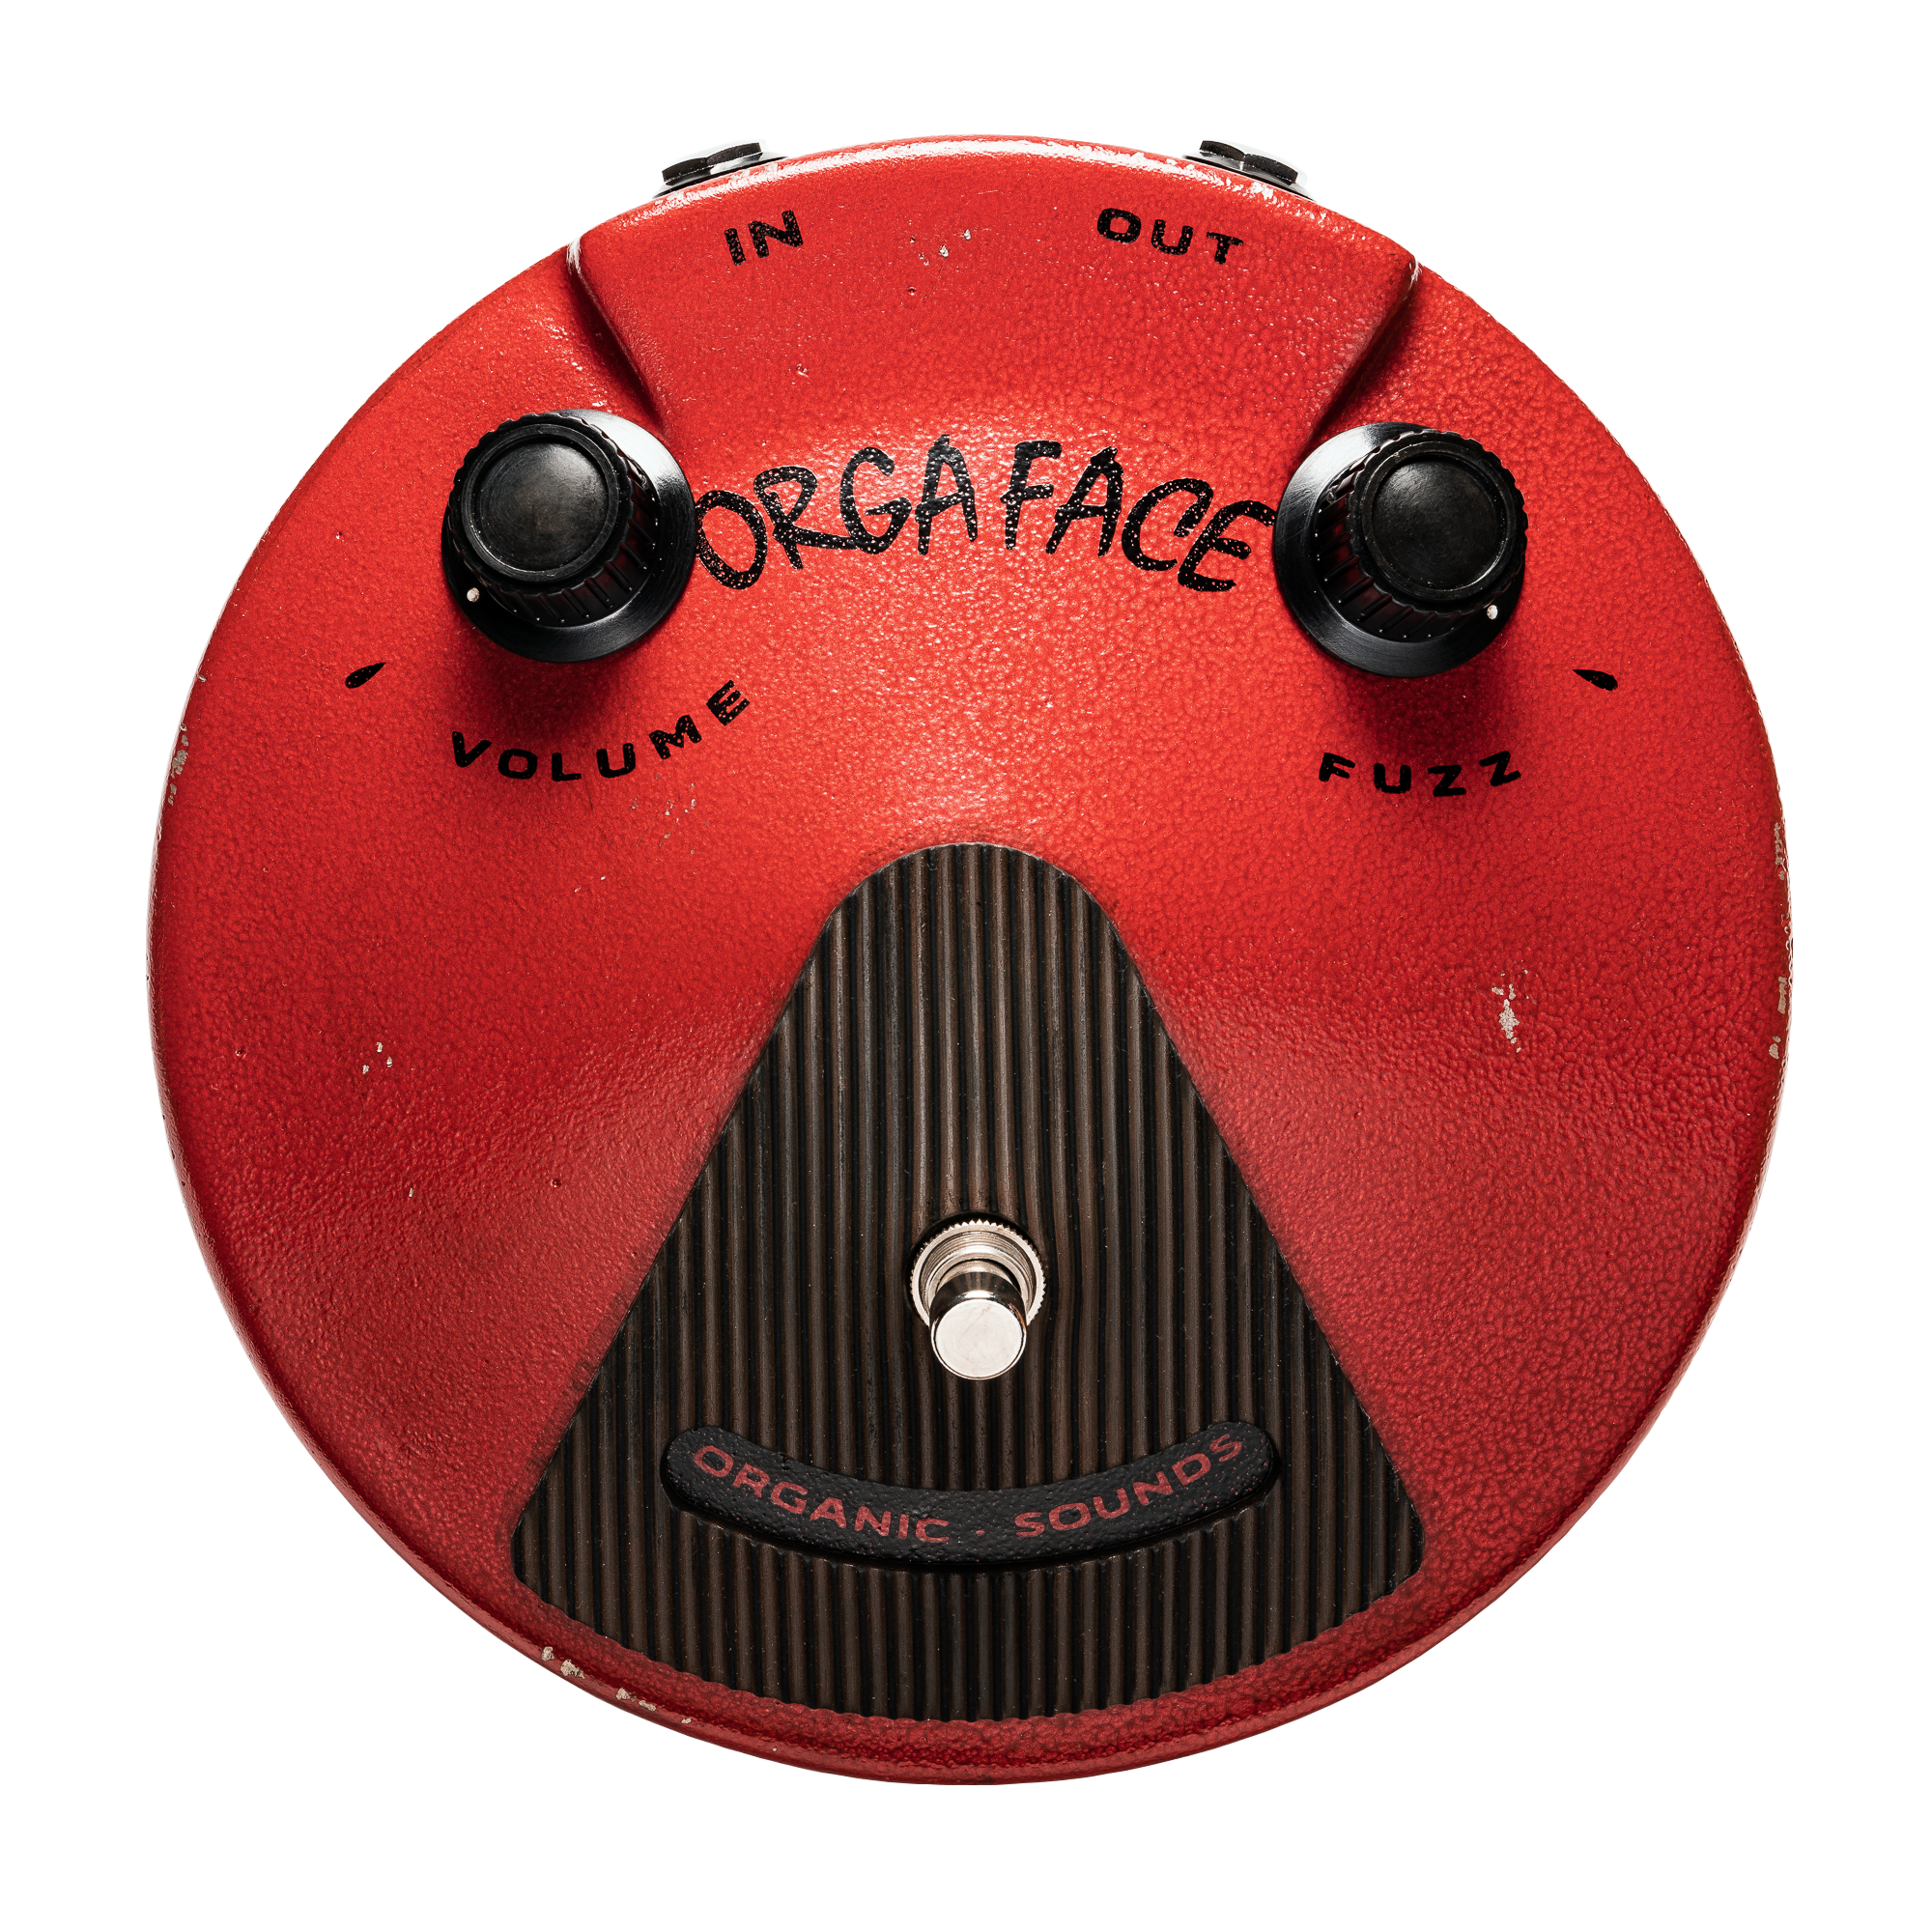 ORGA FACE Silicon / Aged Red